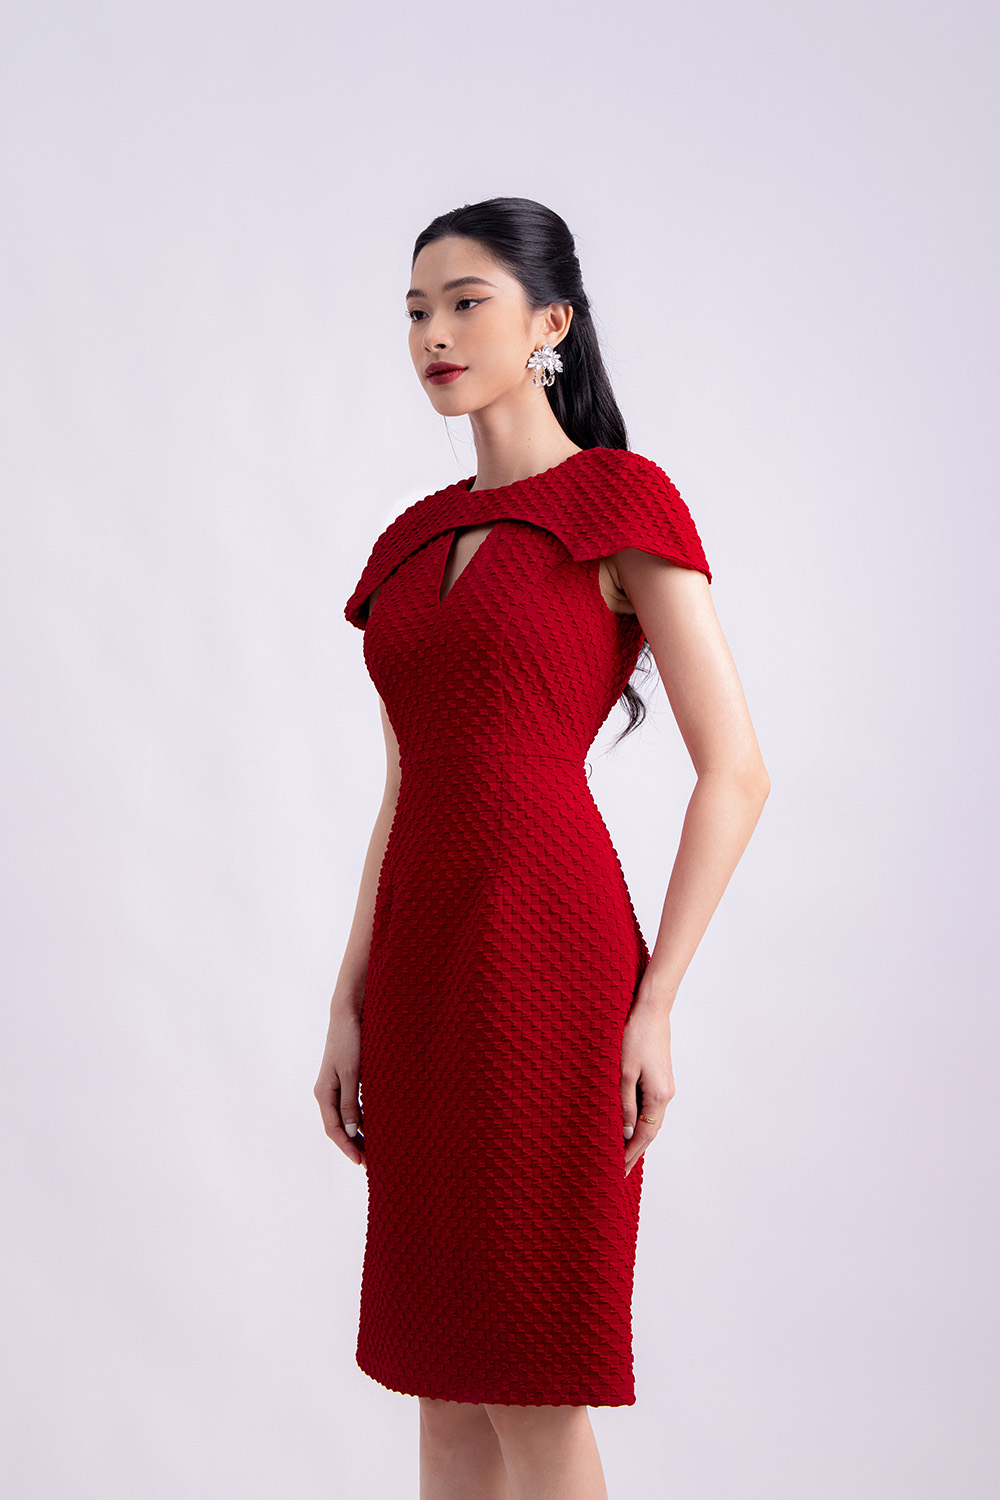 Đầm đỏ tay phồng xếp ly chân váy – Do Long